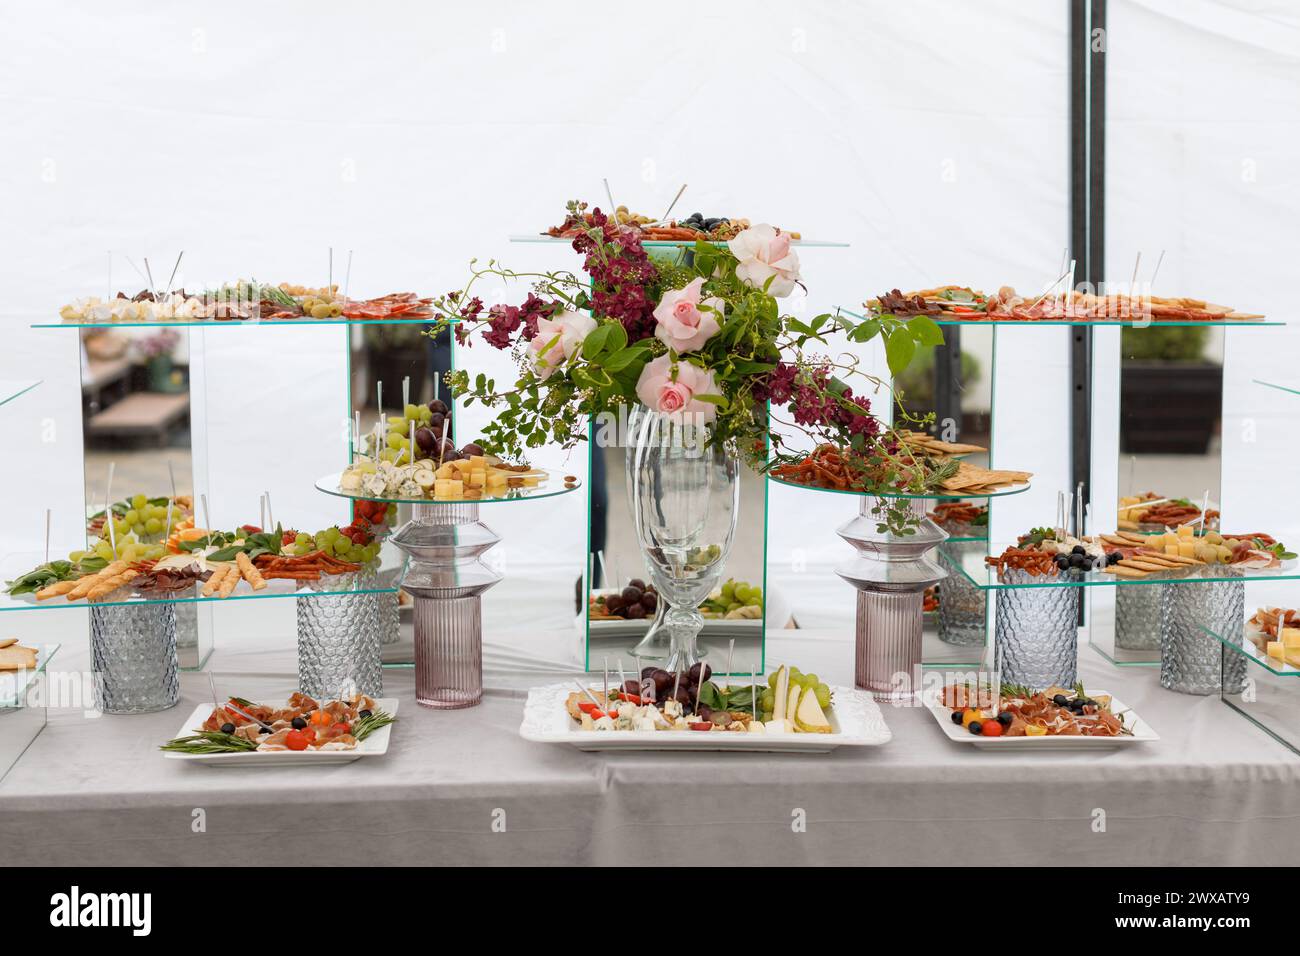 Un tavolo coperto da una gamma di diversi tipi di cibo, che vanno da frutta e verdura a carni e dolci, creando un colorato e appetitoso Foto Stock